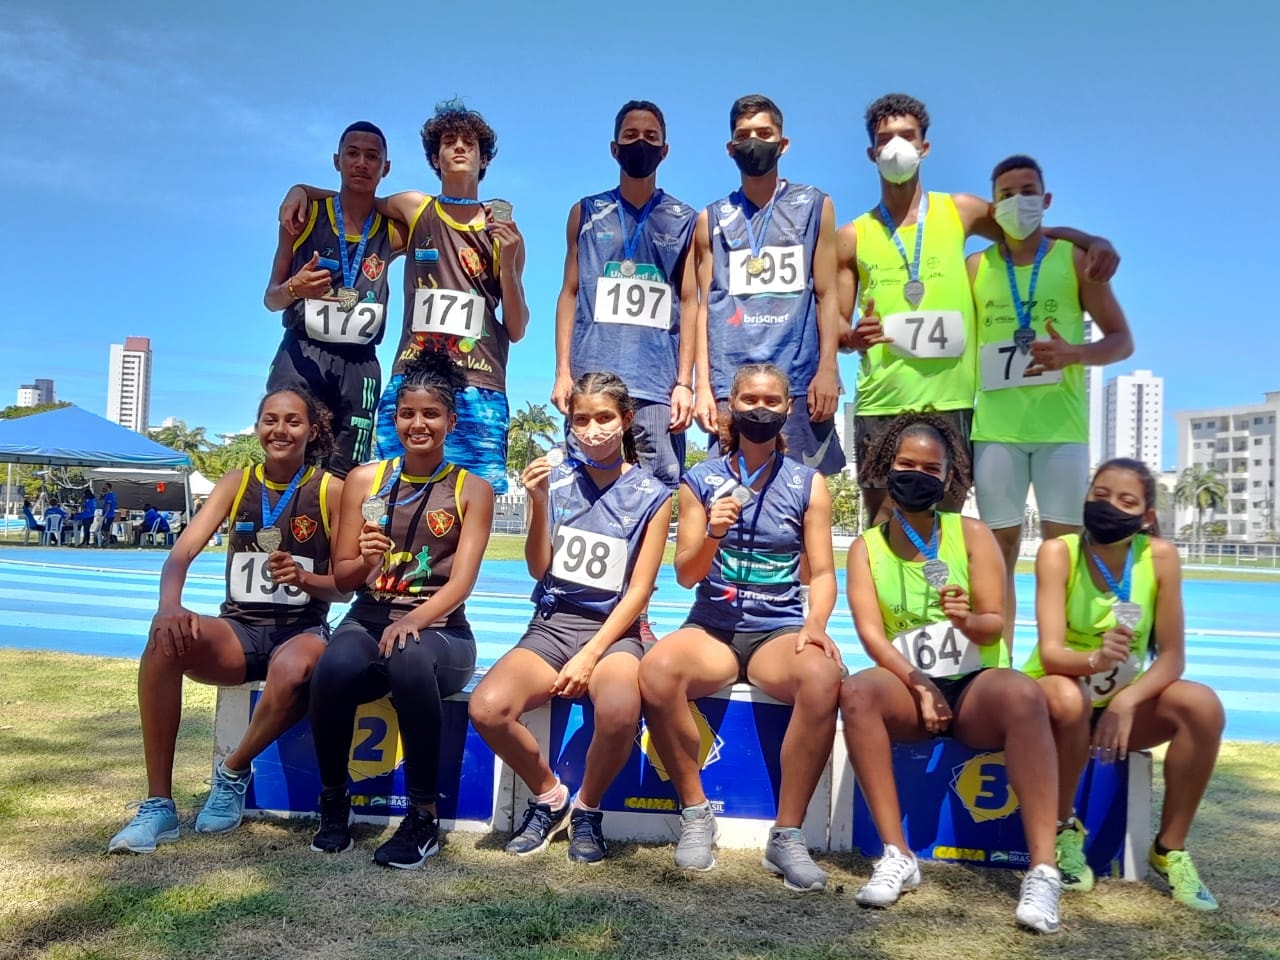 Delegação de atletismo de Cerro Corá consegue bons resultados em Recife-PE